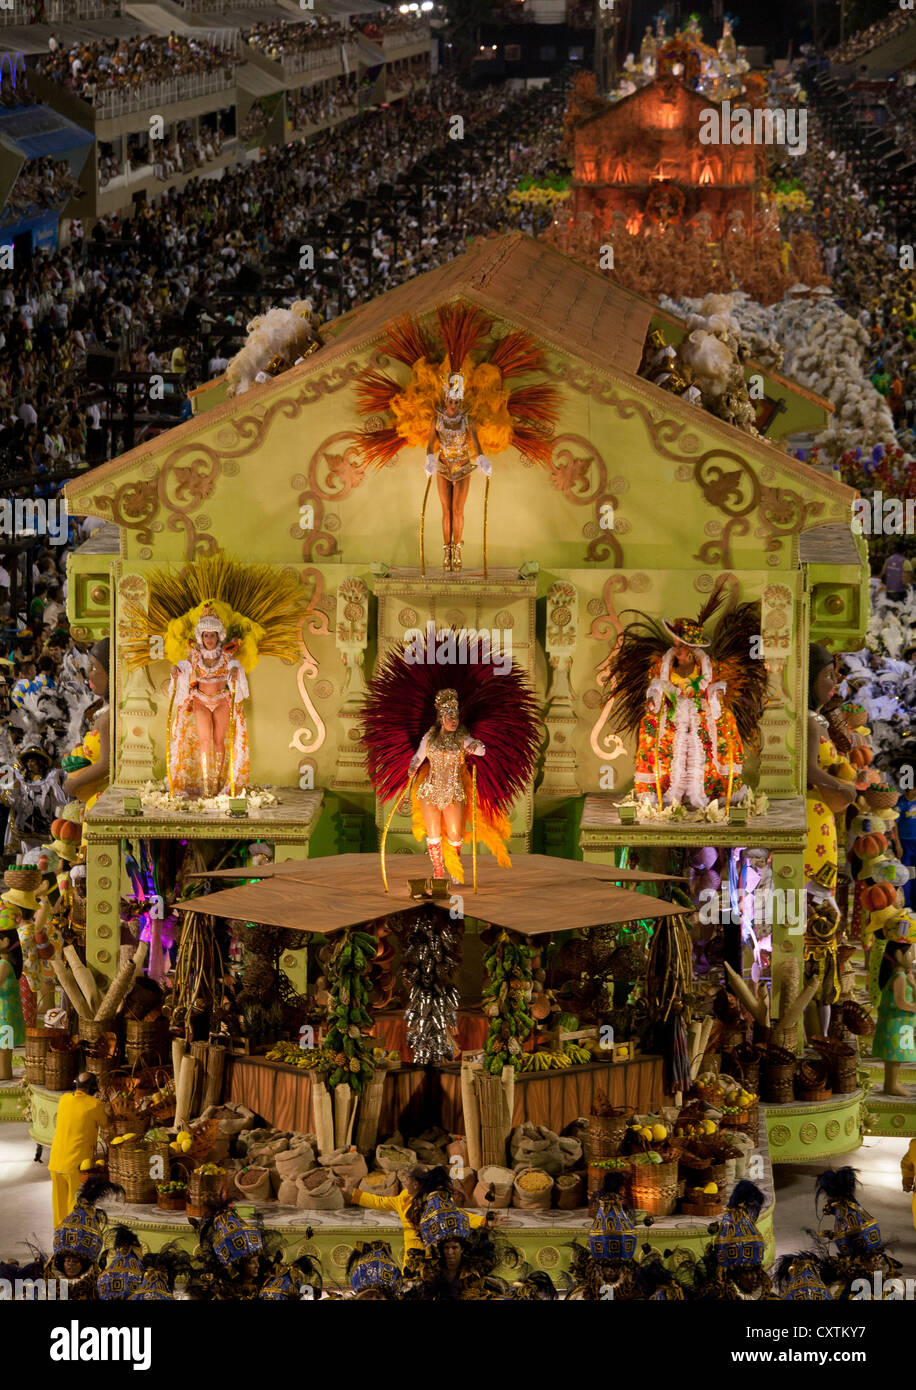 Flotteur avec maison décorative en défilé de carnaval Rio de Janeiro Brésil Banque D'Images